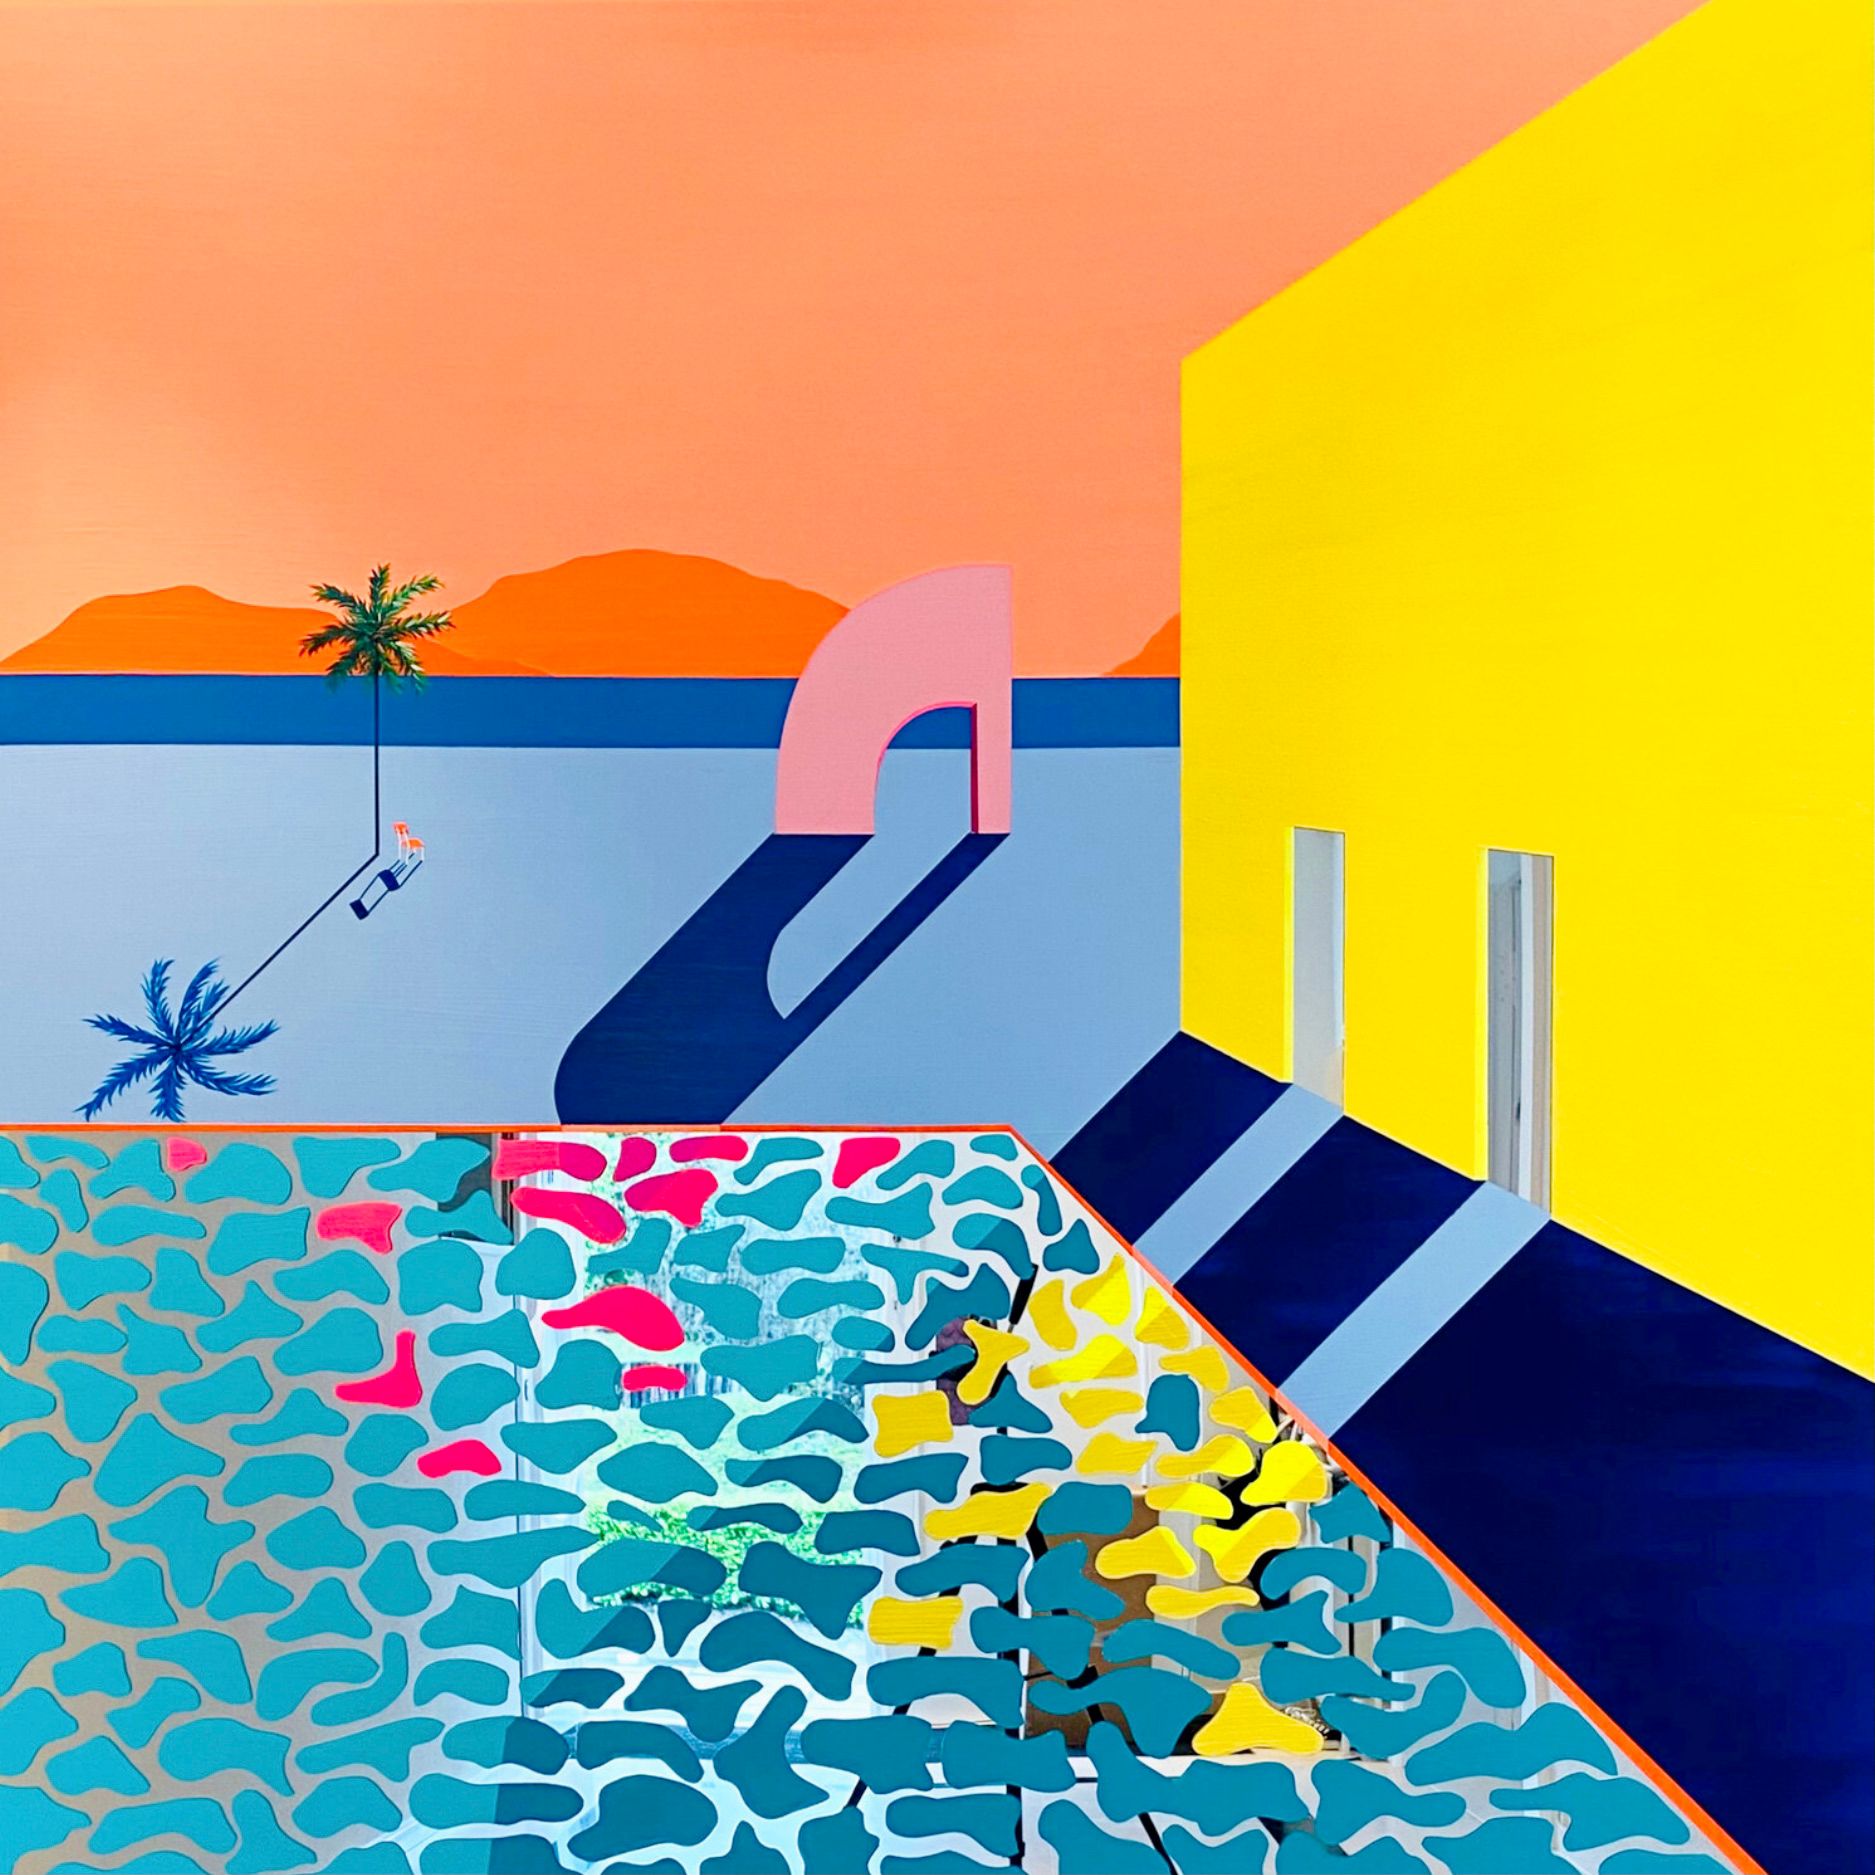 Isabelle Derecque, "Pintura para el repartidor de tacos" Pintura colorista, pintada sobre una misteriosa piscina de colores colocada sobre espejo de plexiglás en estilo pop-up con colores alegres y enérgicos. Visualizado mediante geometría, perspectivas, contrastes y reflejos.